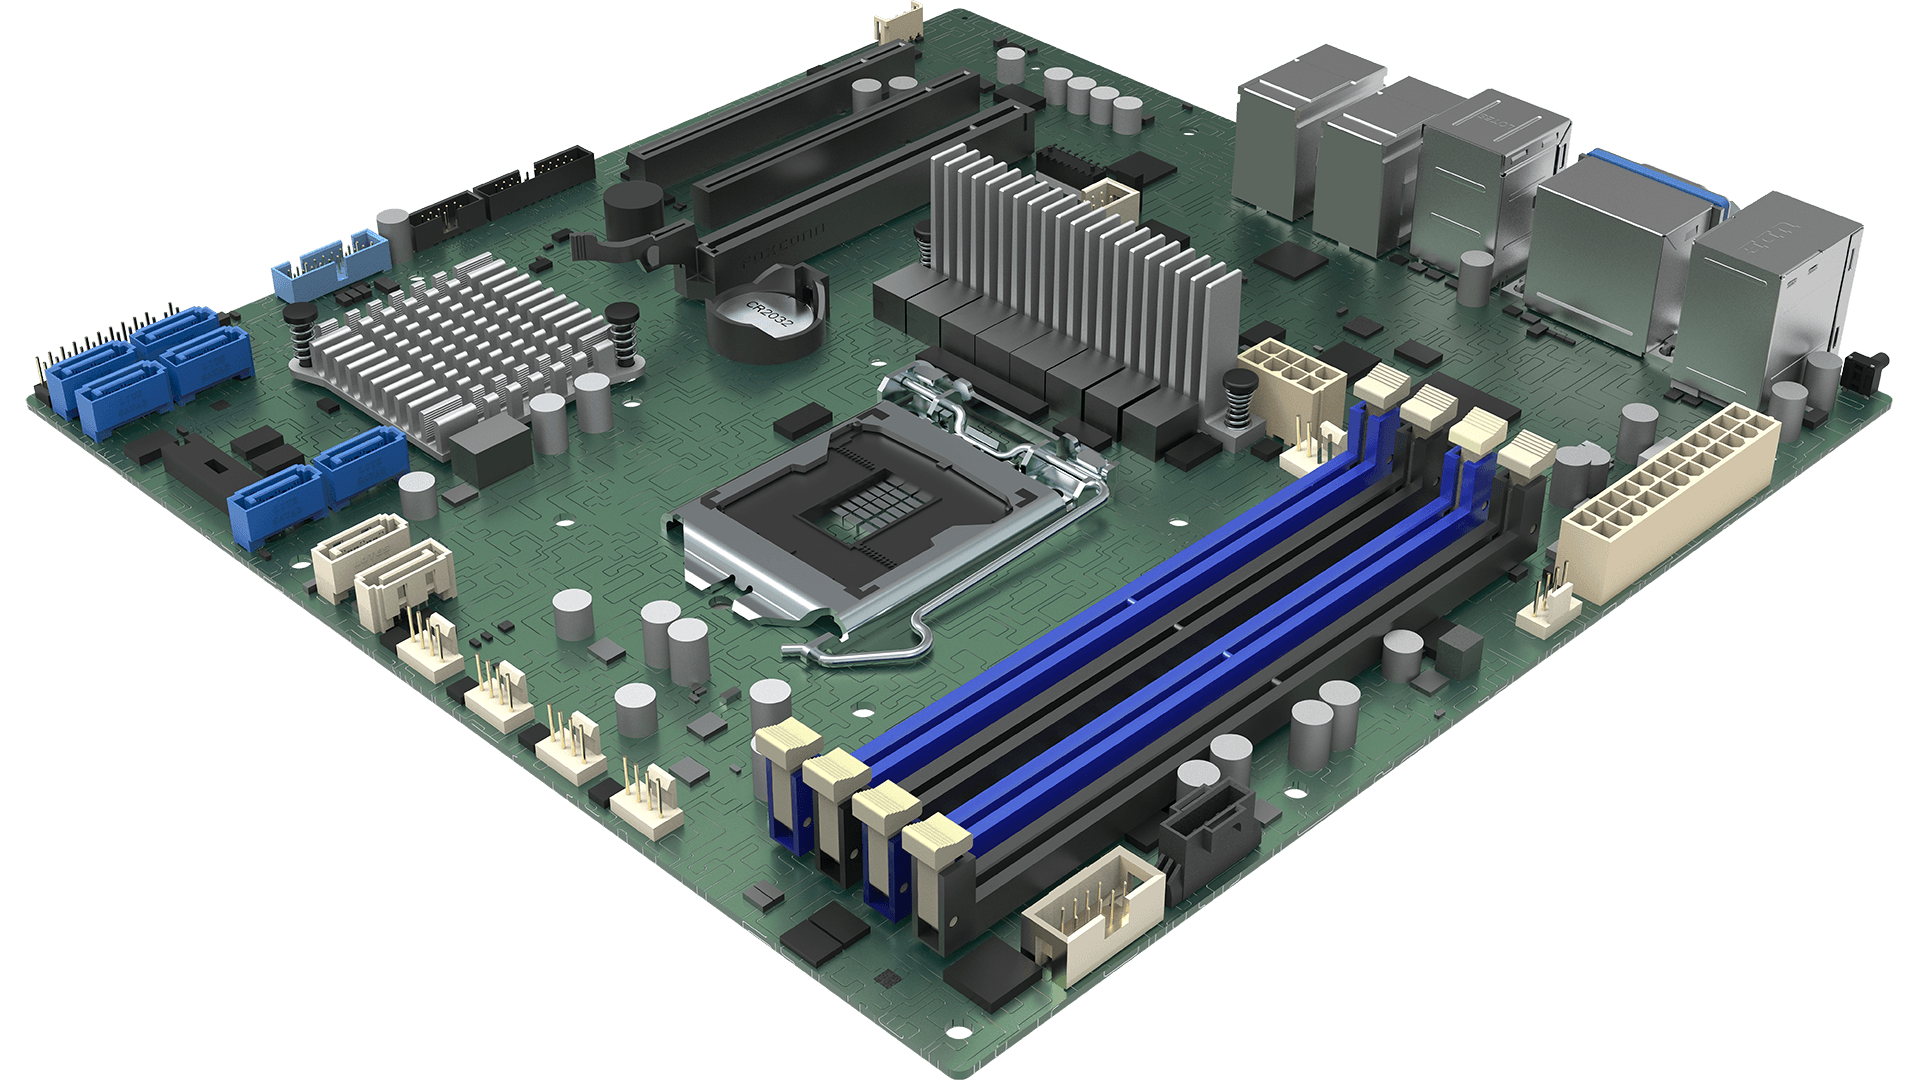 Intel Server Board M10JNP2SB 1xLGA1151(CL), C246, 4xDDR4, 8xSATA, (2,1x PCI-E 3.0 x8,x4), 4x1GbE + IPMI